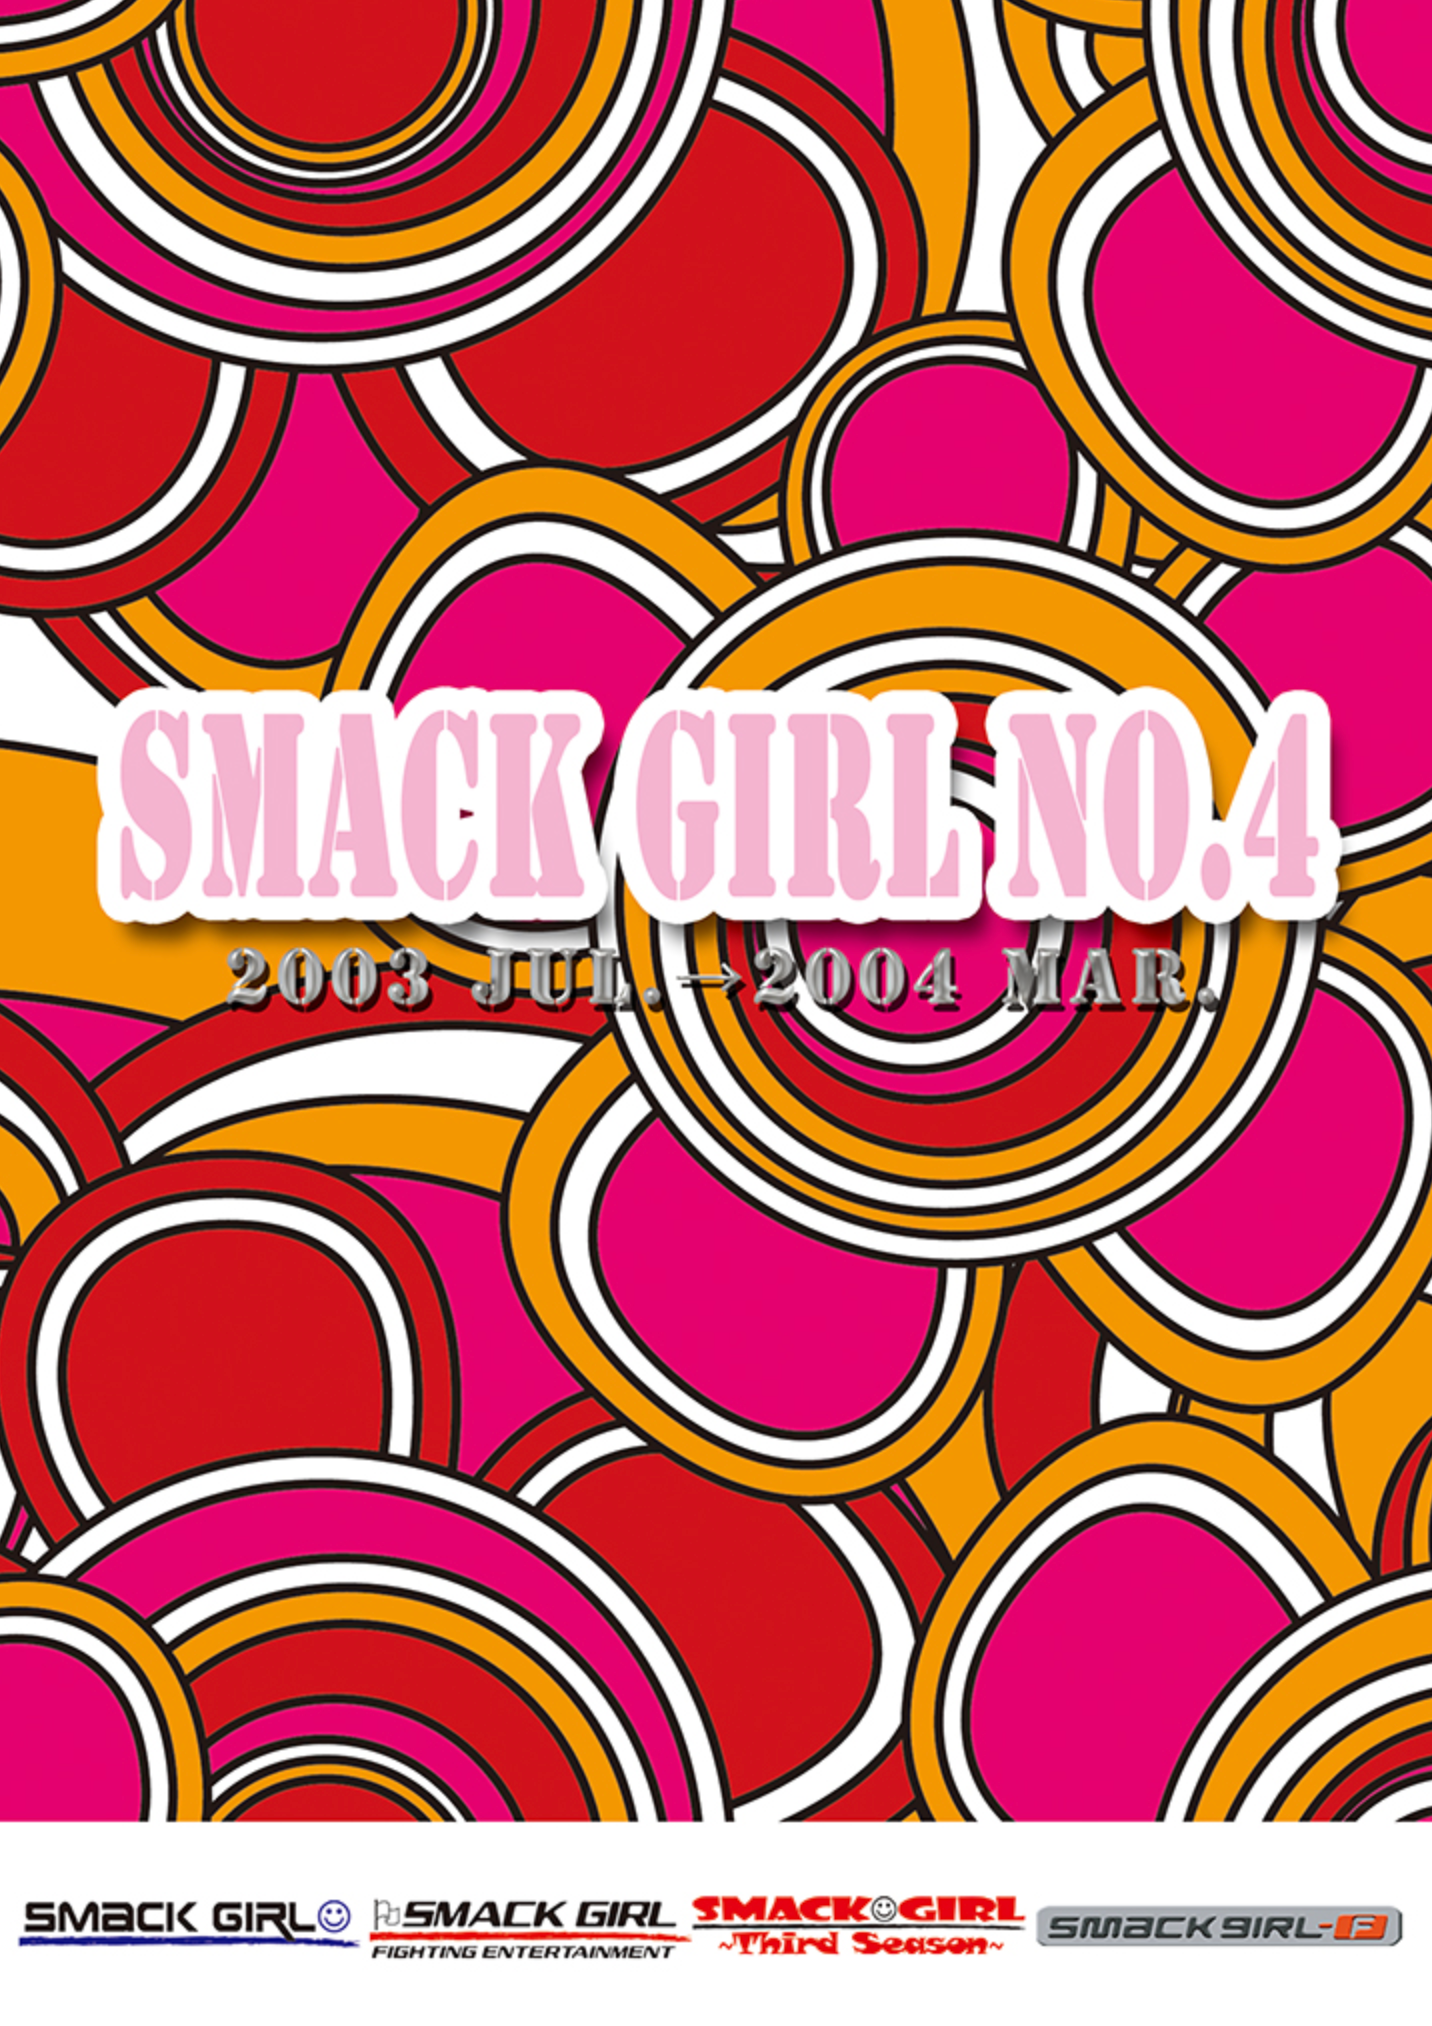 Smack Girl #4 July 2003 - March 2004 DVD - Budovideos Inc